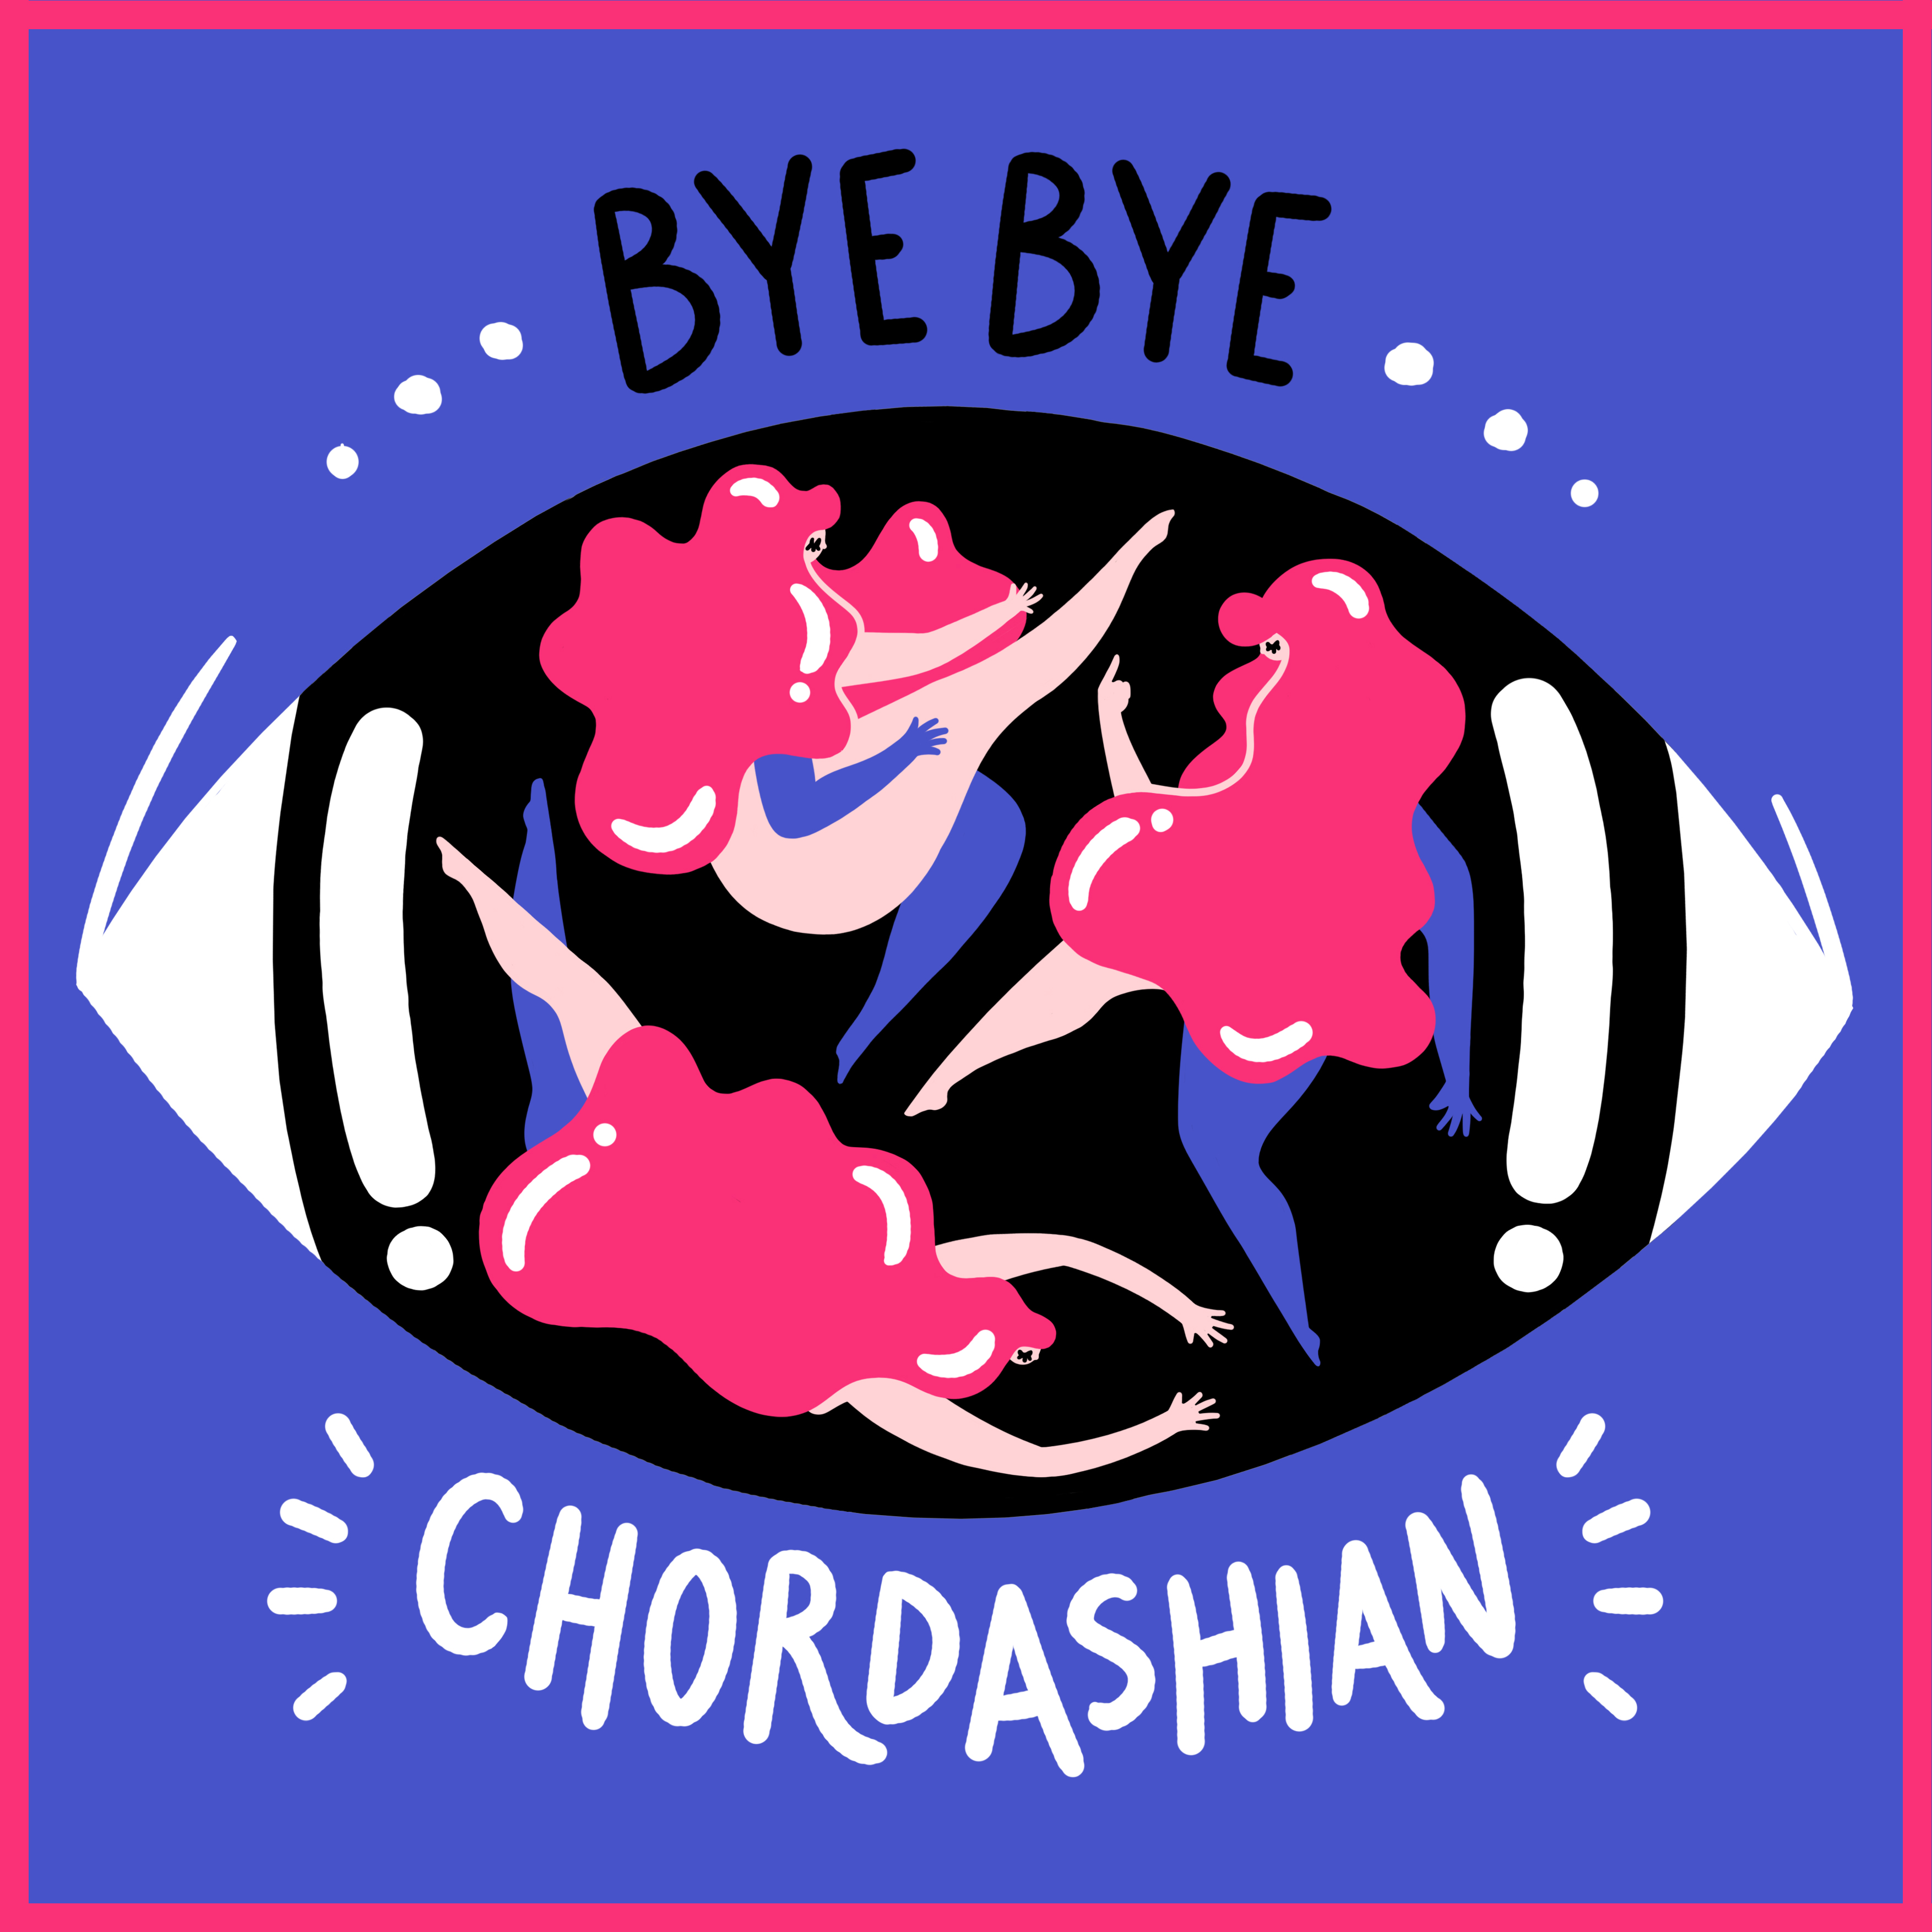 Chordashian - Bye Bye